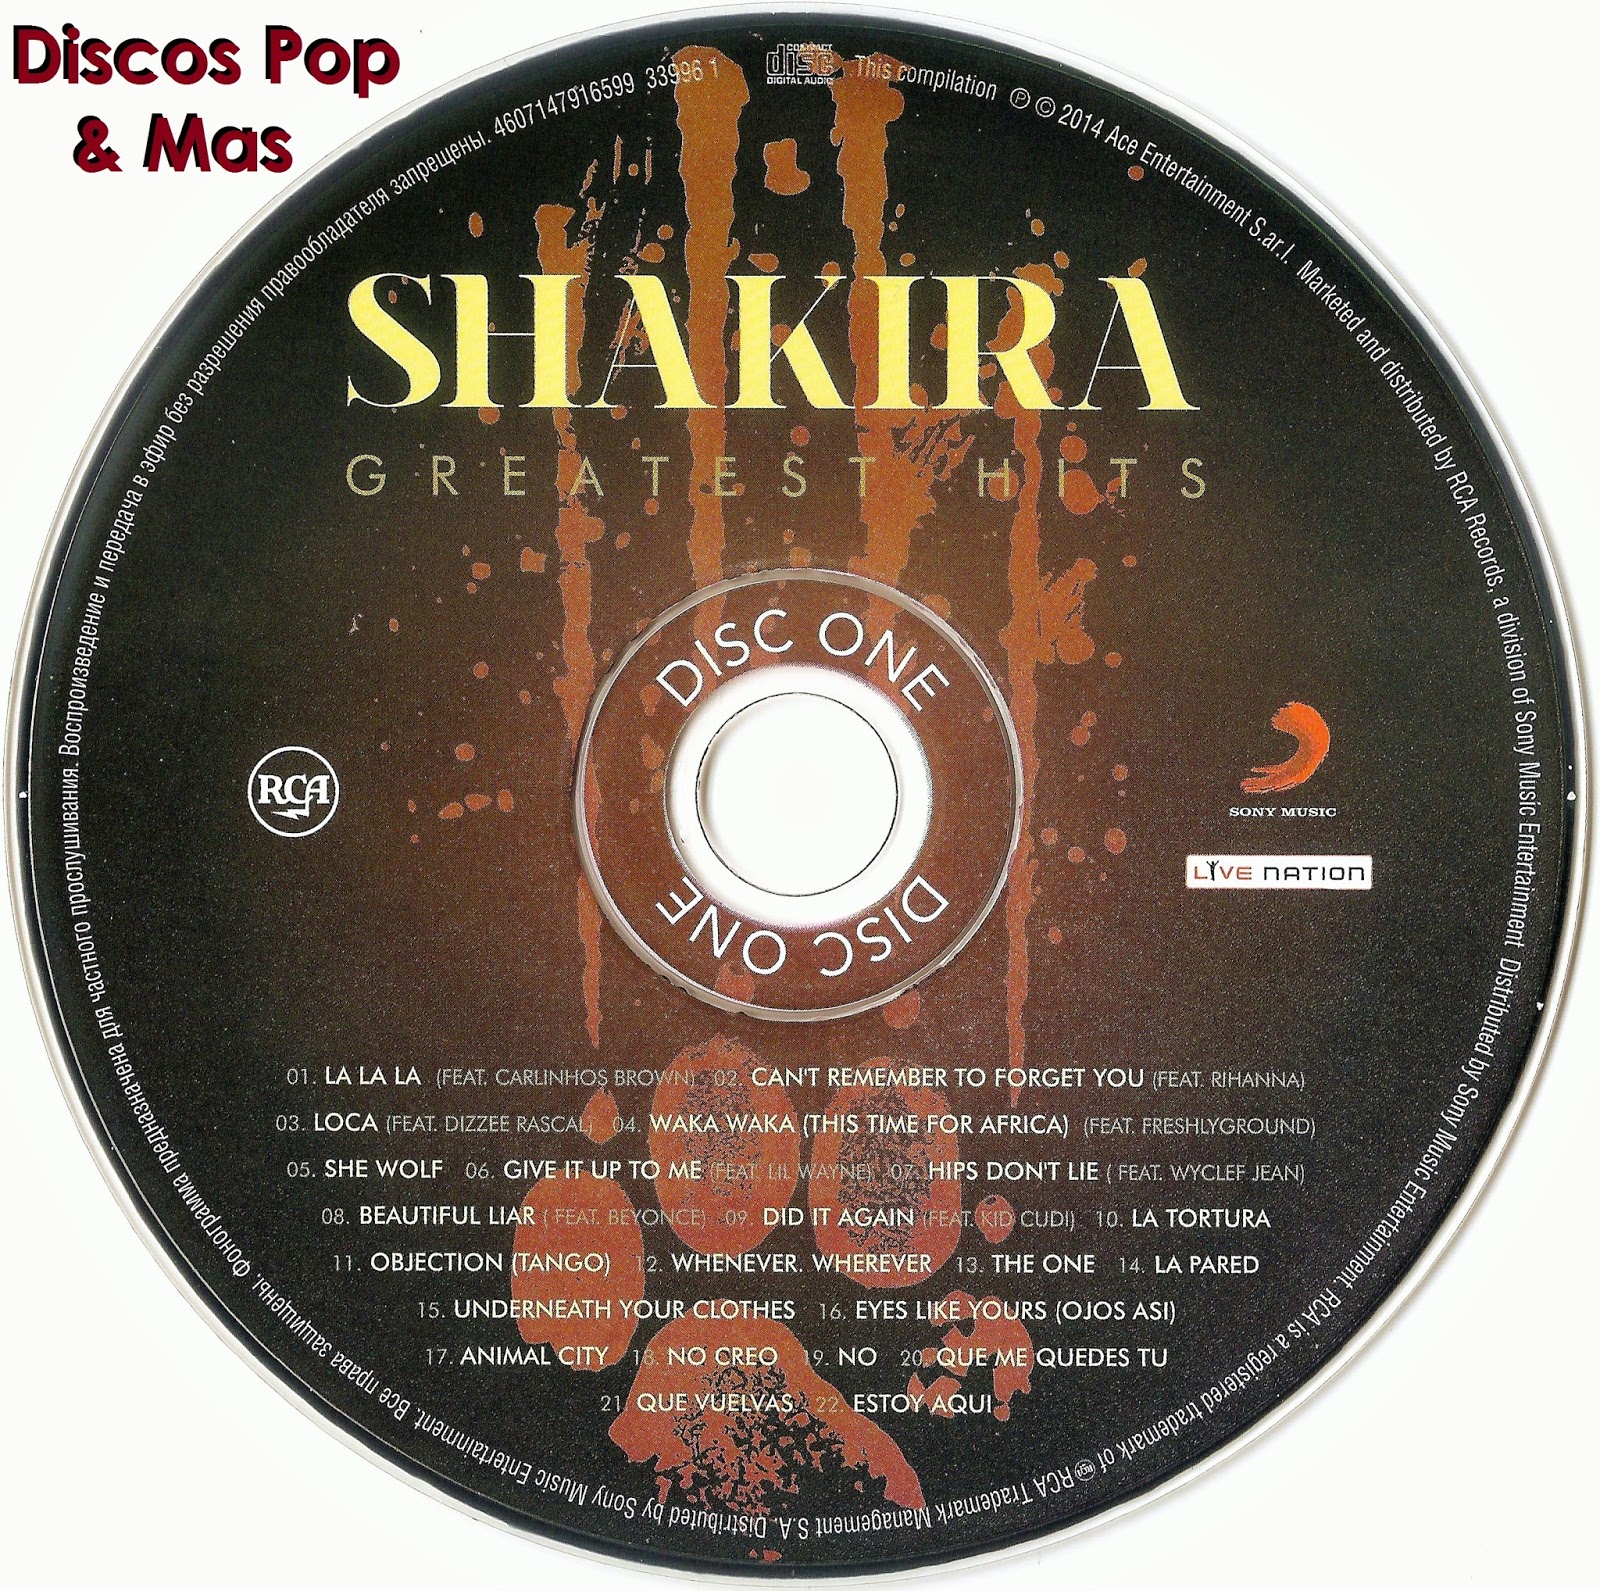 Discos Pop & Mas: Shakira - Greatest Hits (Rusia)1600 x 1591